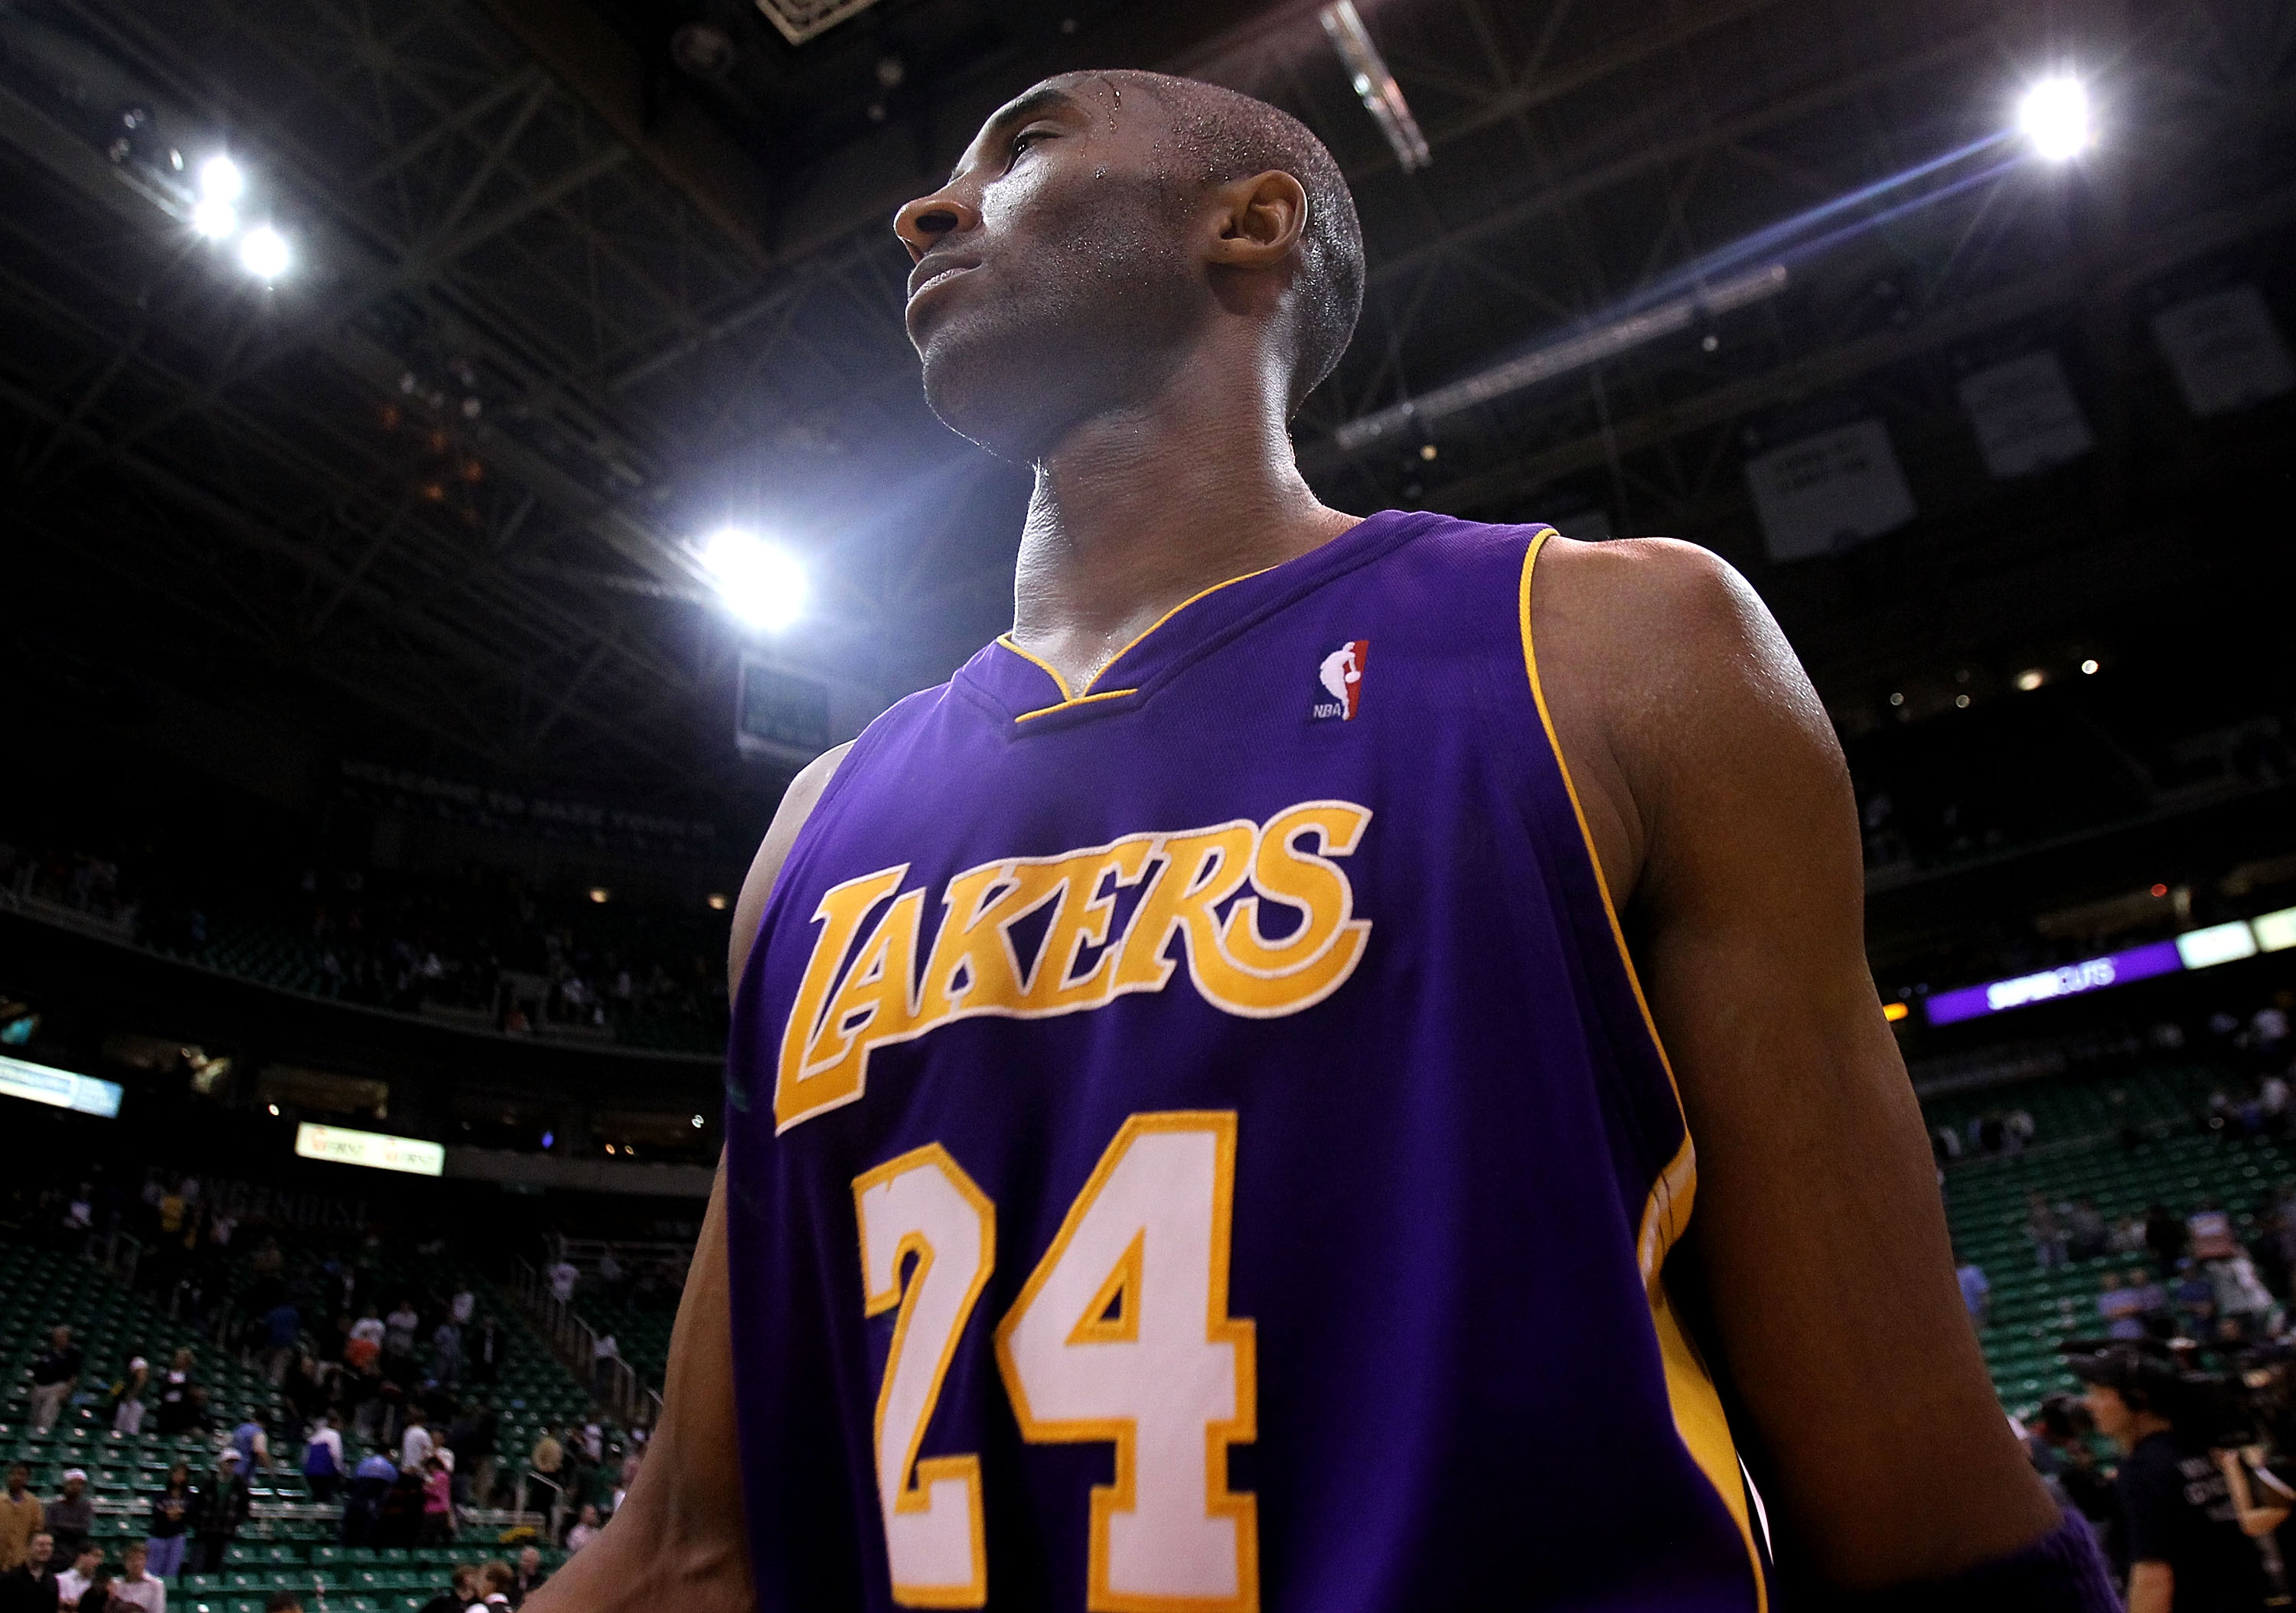 Morre Kobe Bryant, lenda do basquete, em acidente de helicóptero na  Califórnia - Esporte - Extra Online